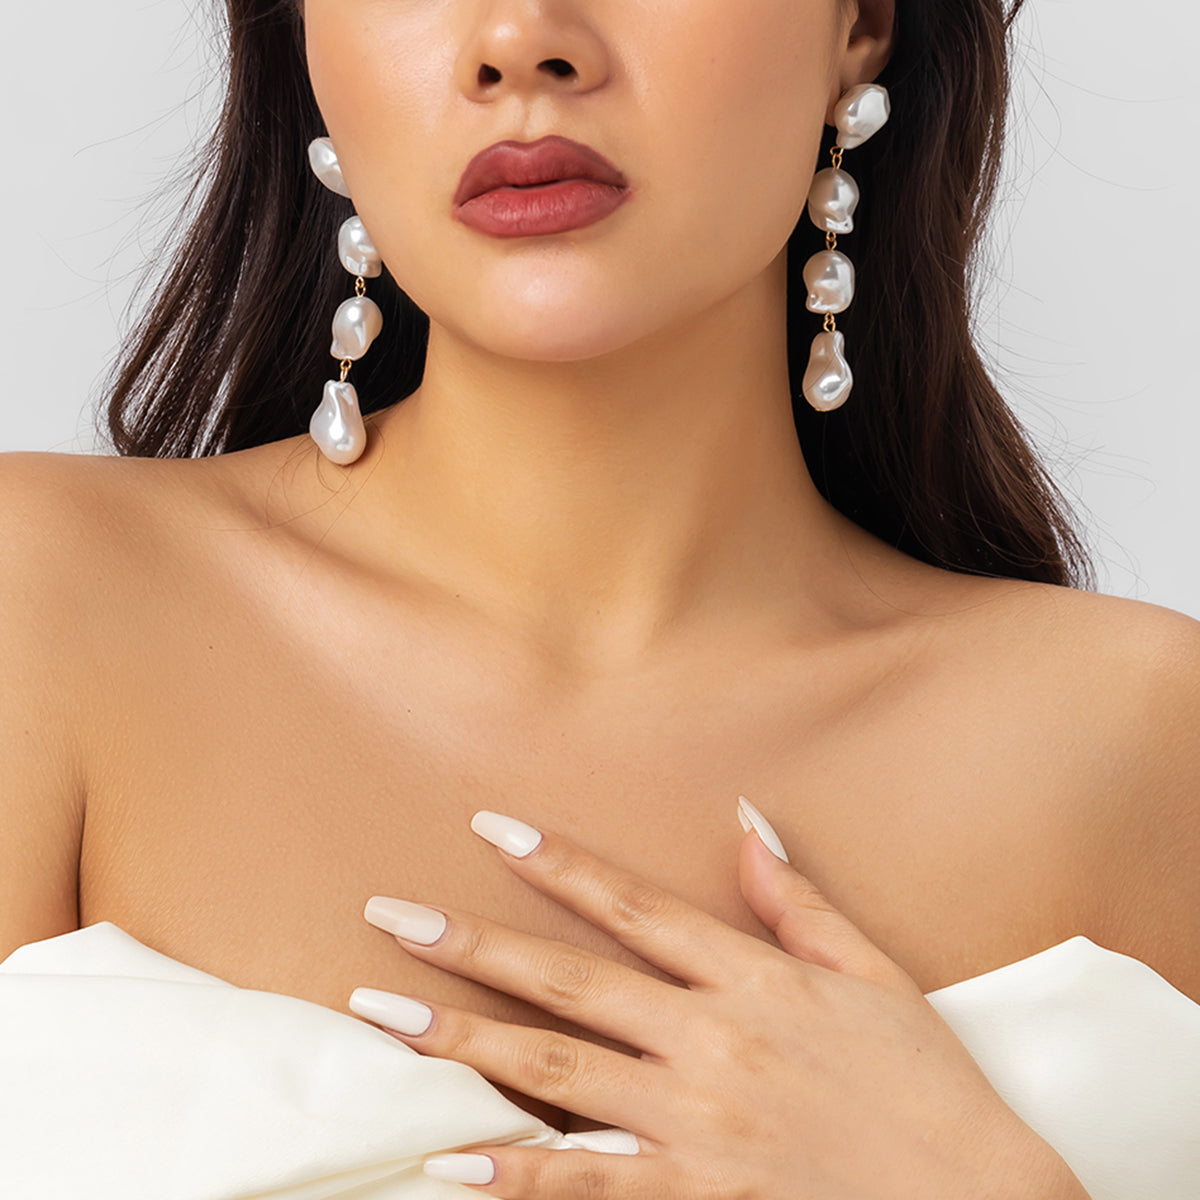 Stylish women's drop earrings by irregular 3D artificial pearls